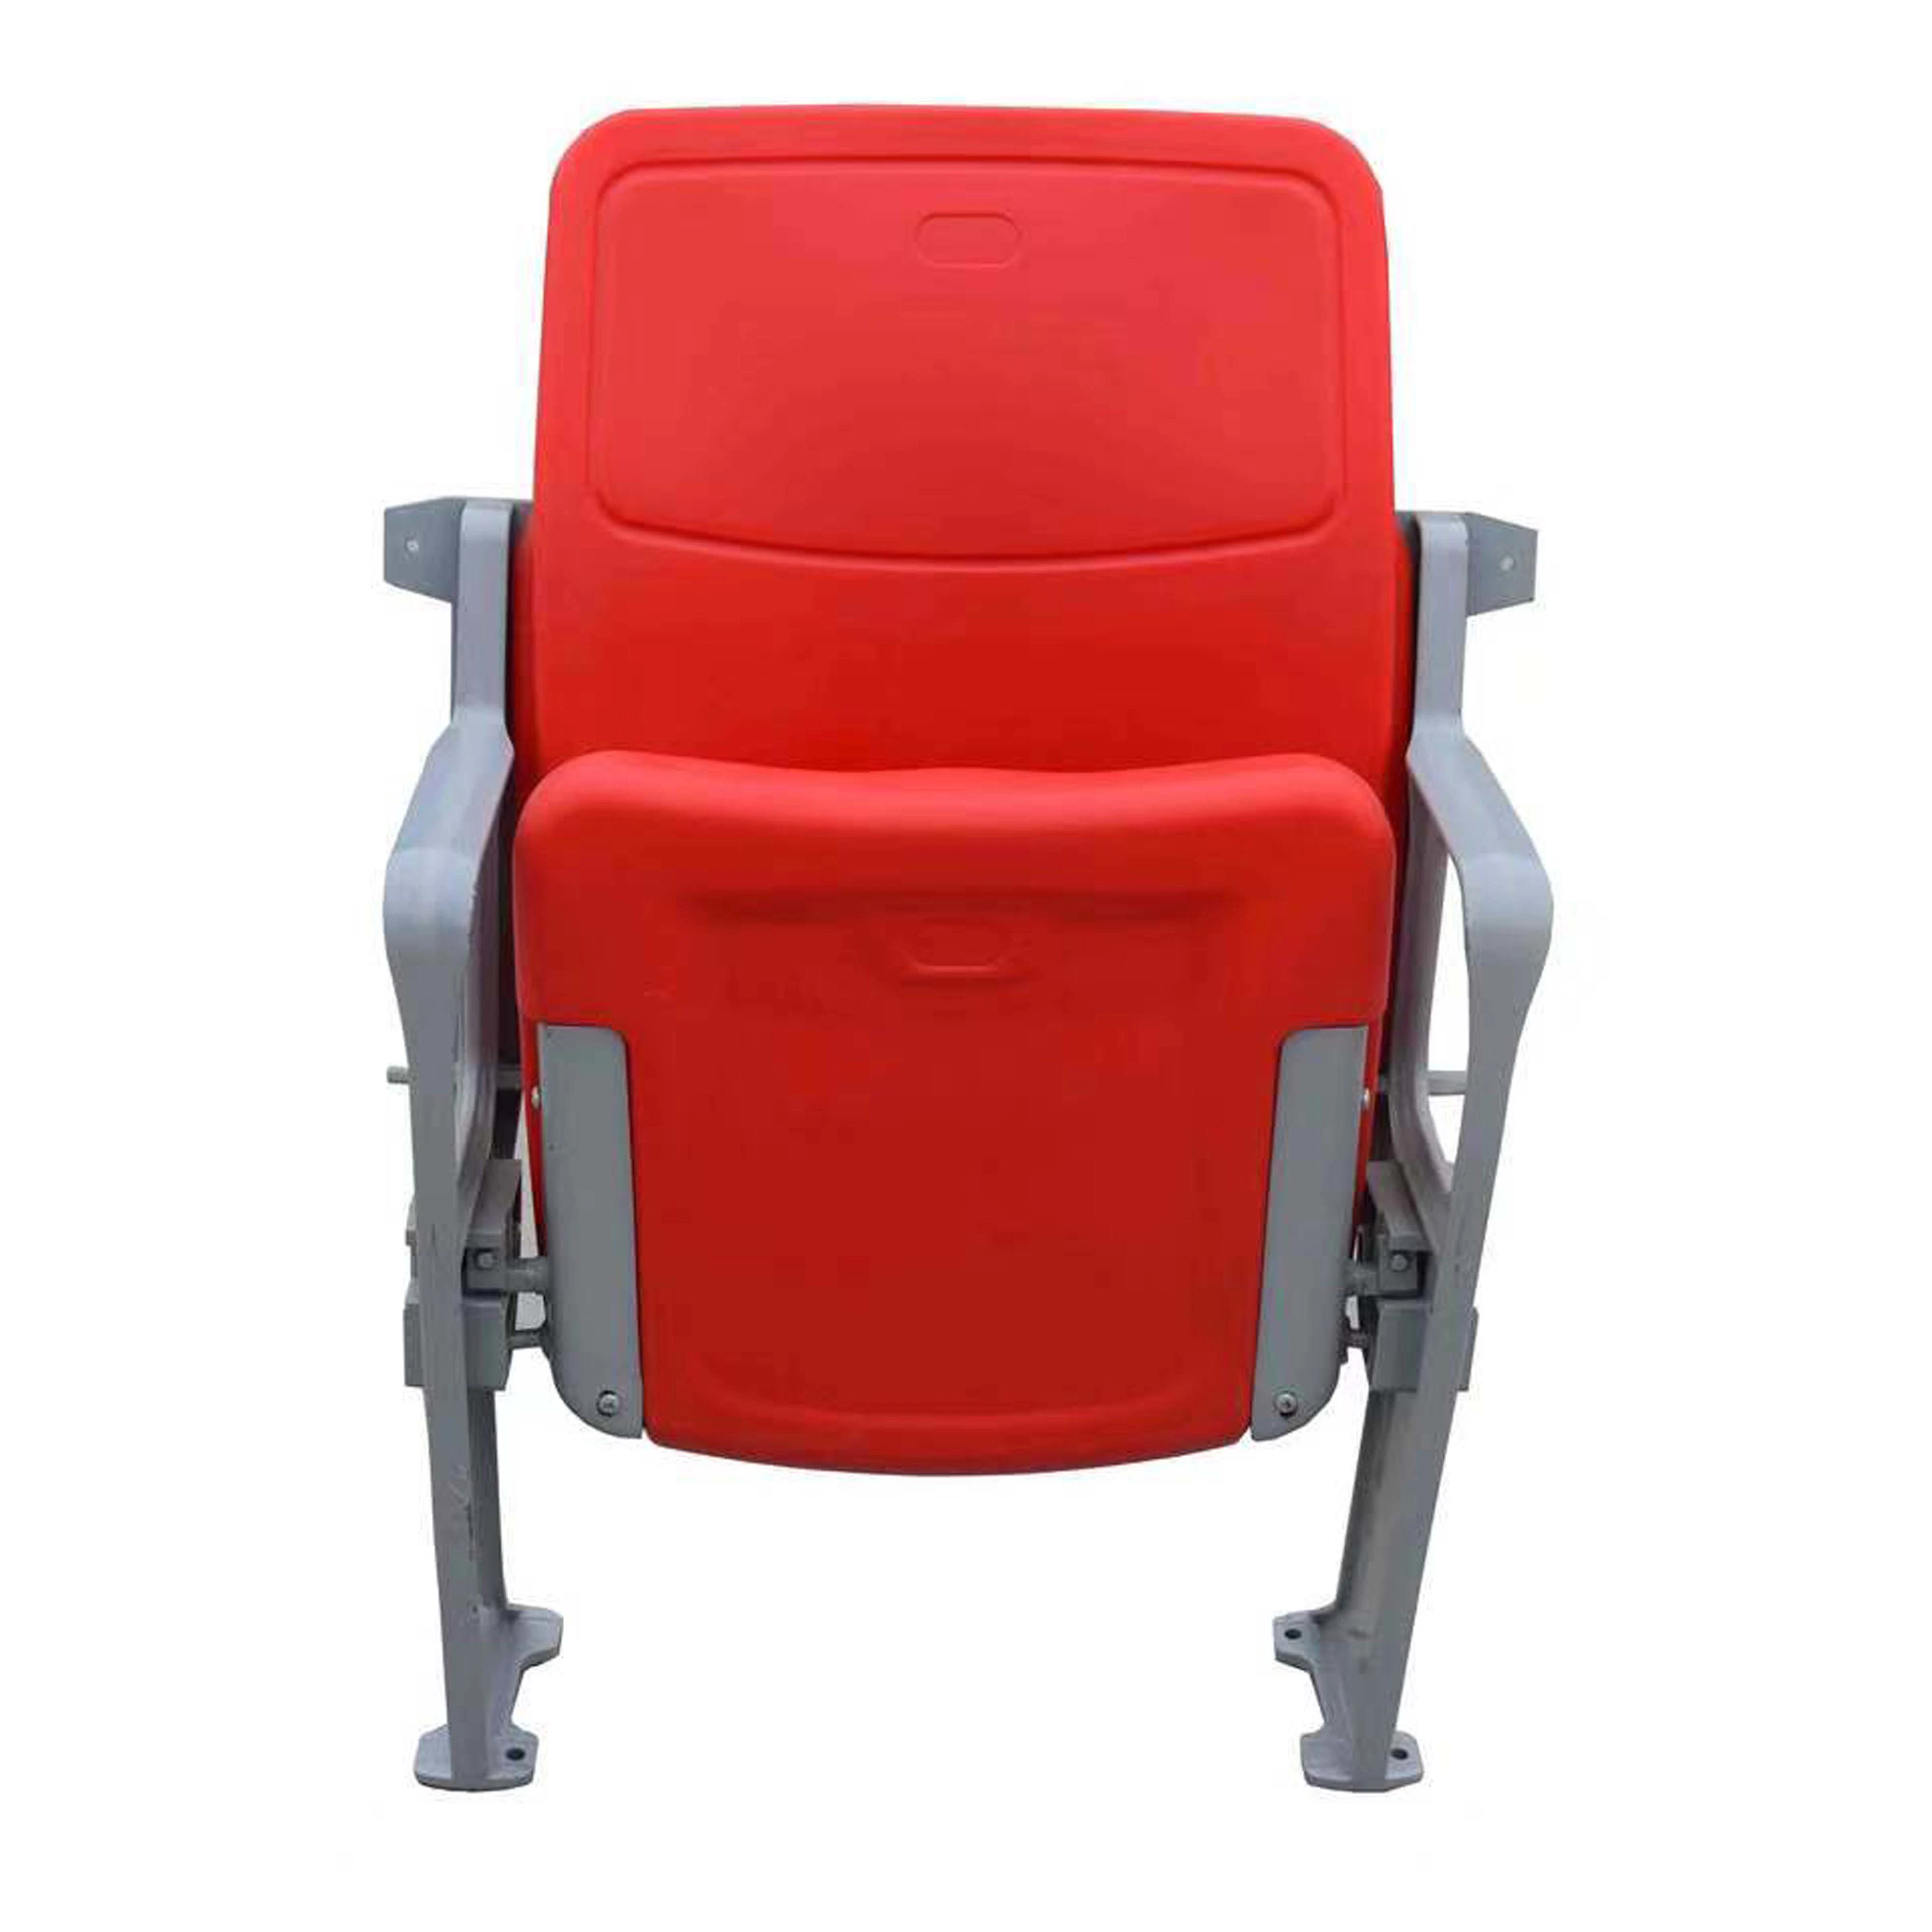 Настраиваемые пластиковый Складной стул стадиона / сиденья с подлокотником для событий и спортивных мероприятий на улице